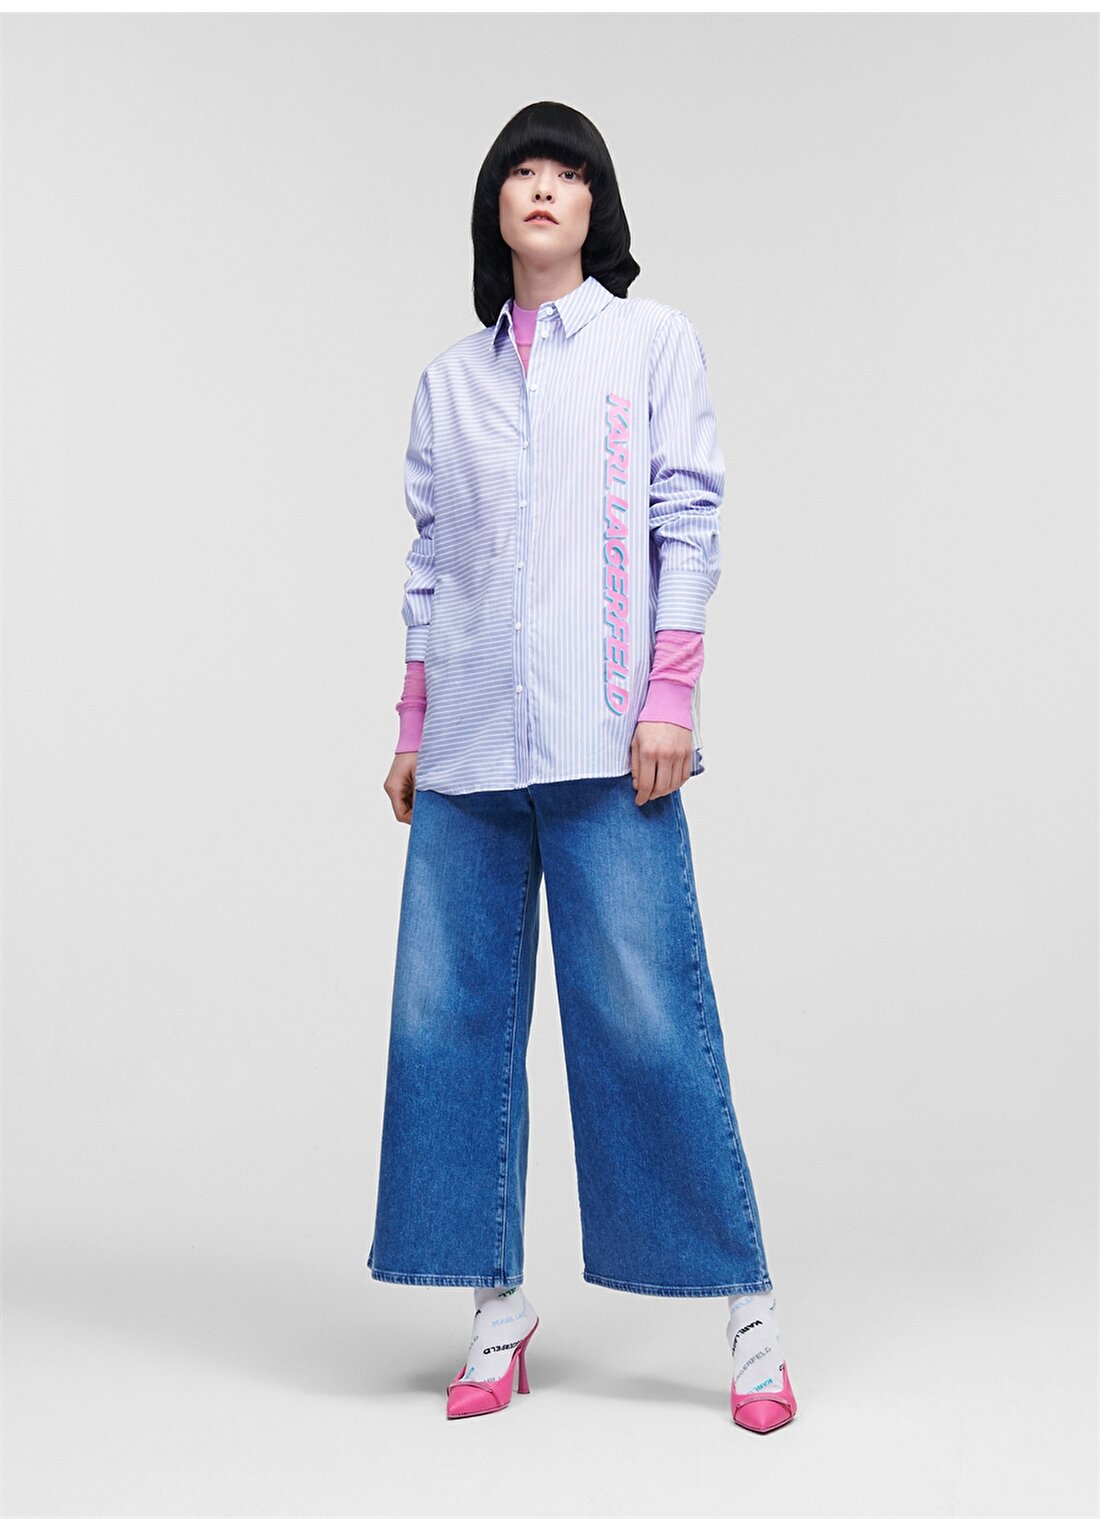 KARL LAGERFELD Standart Gömlek Yaka Baskılı Mavi - Beyaz Kadın Gömlek 225W1607